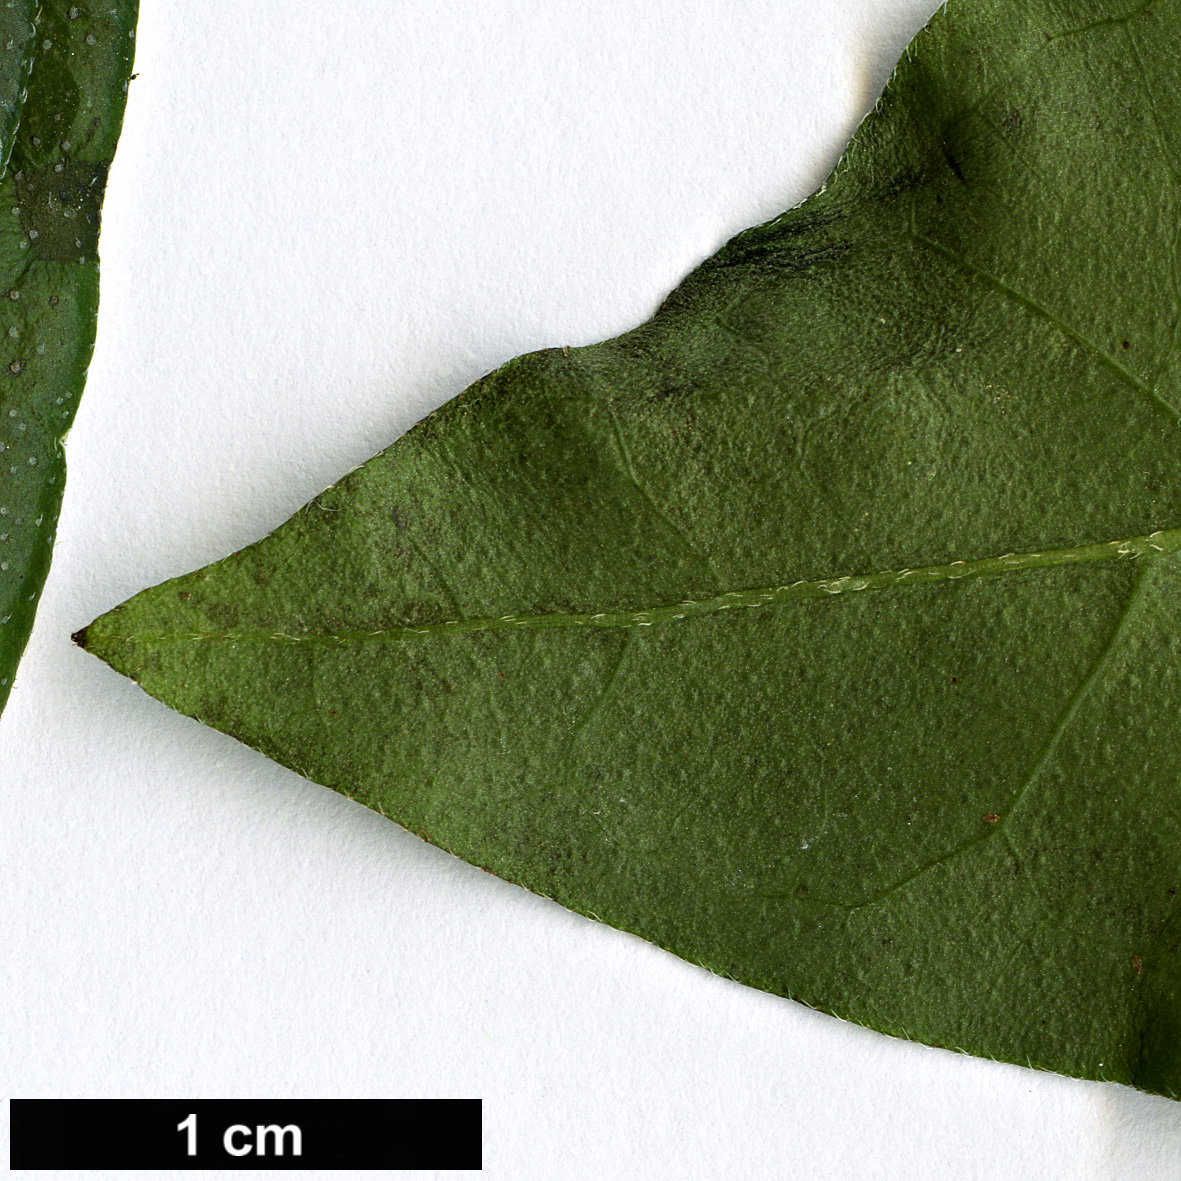 High resolution image: Family: Boraginaceae - Genus: Tournefortia - Taxon: volubilis